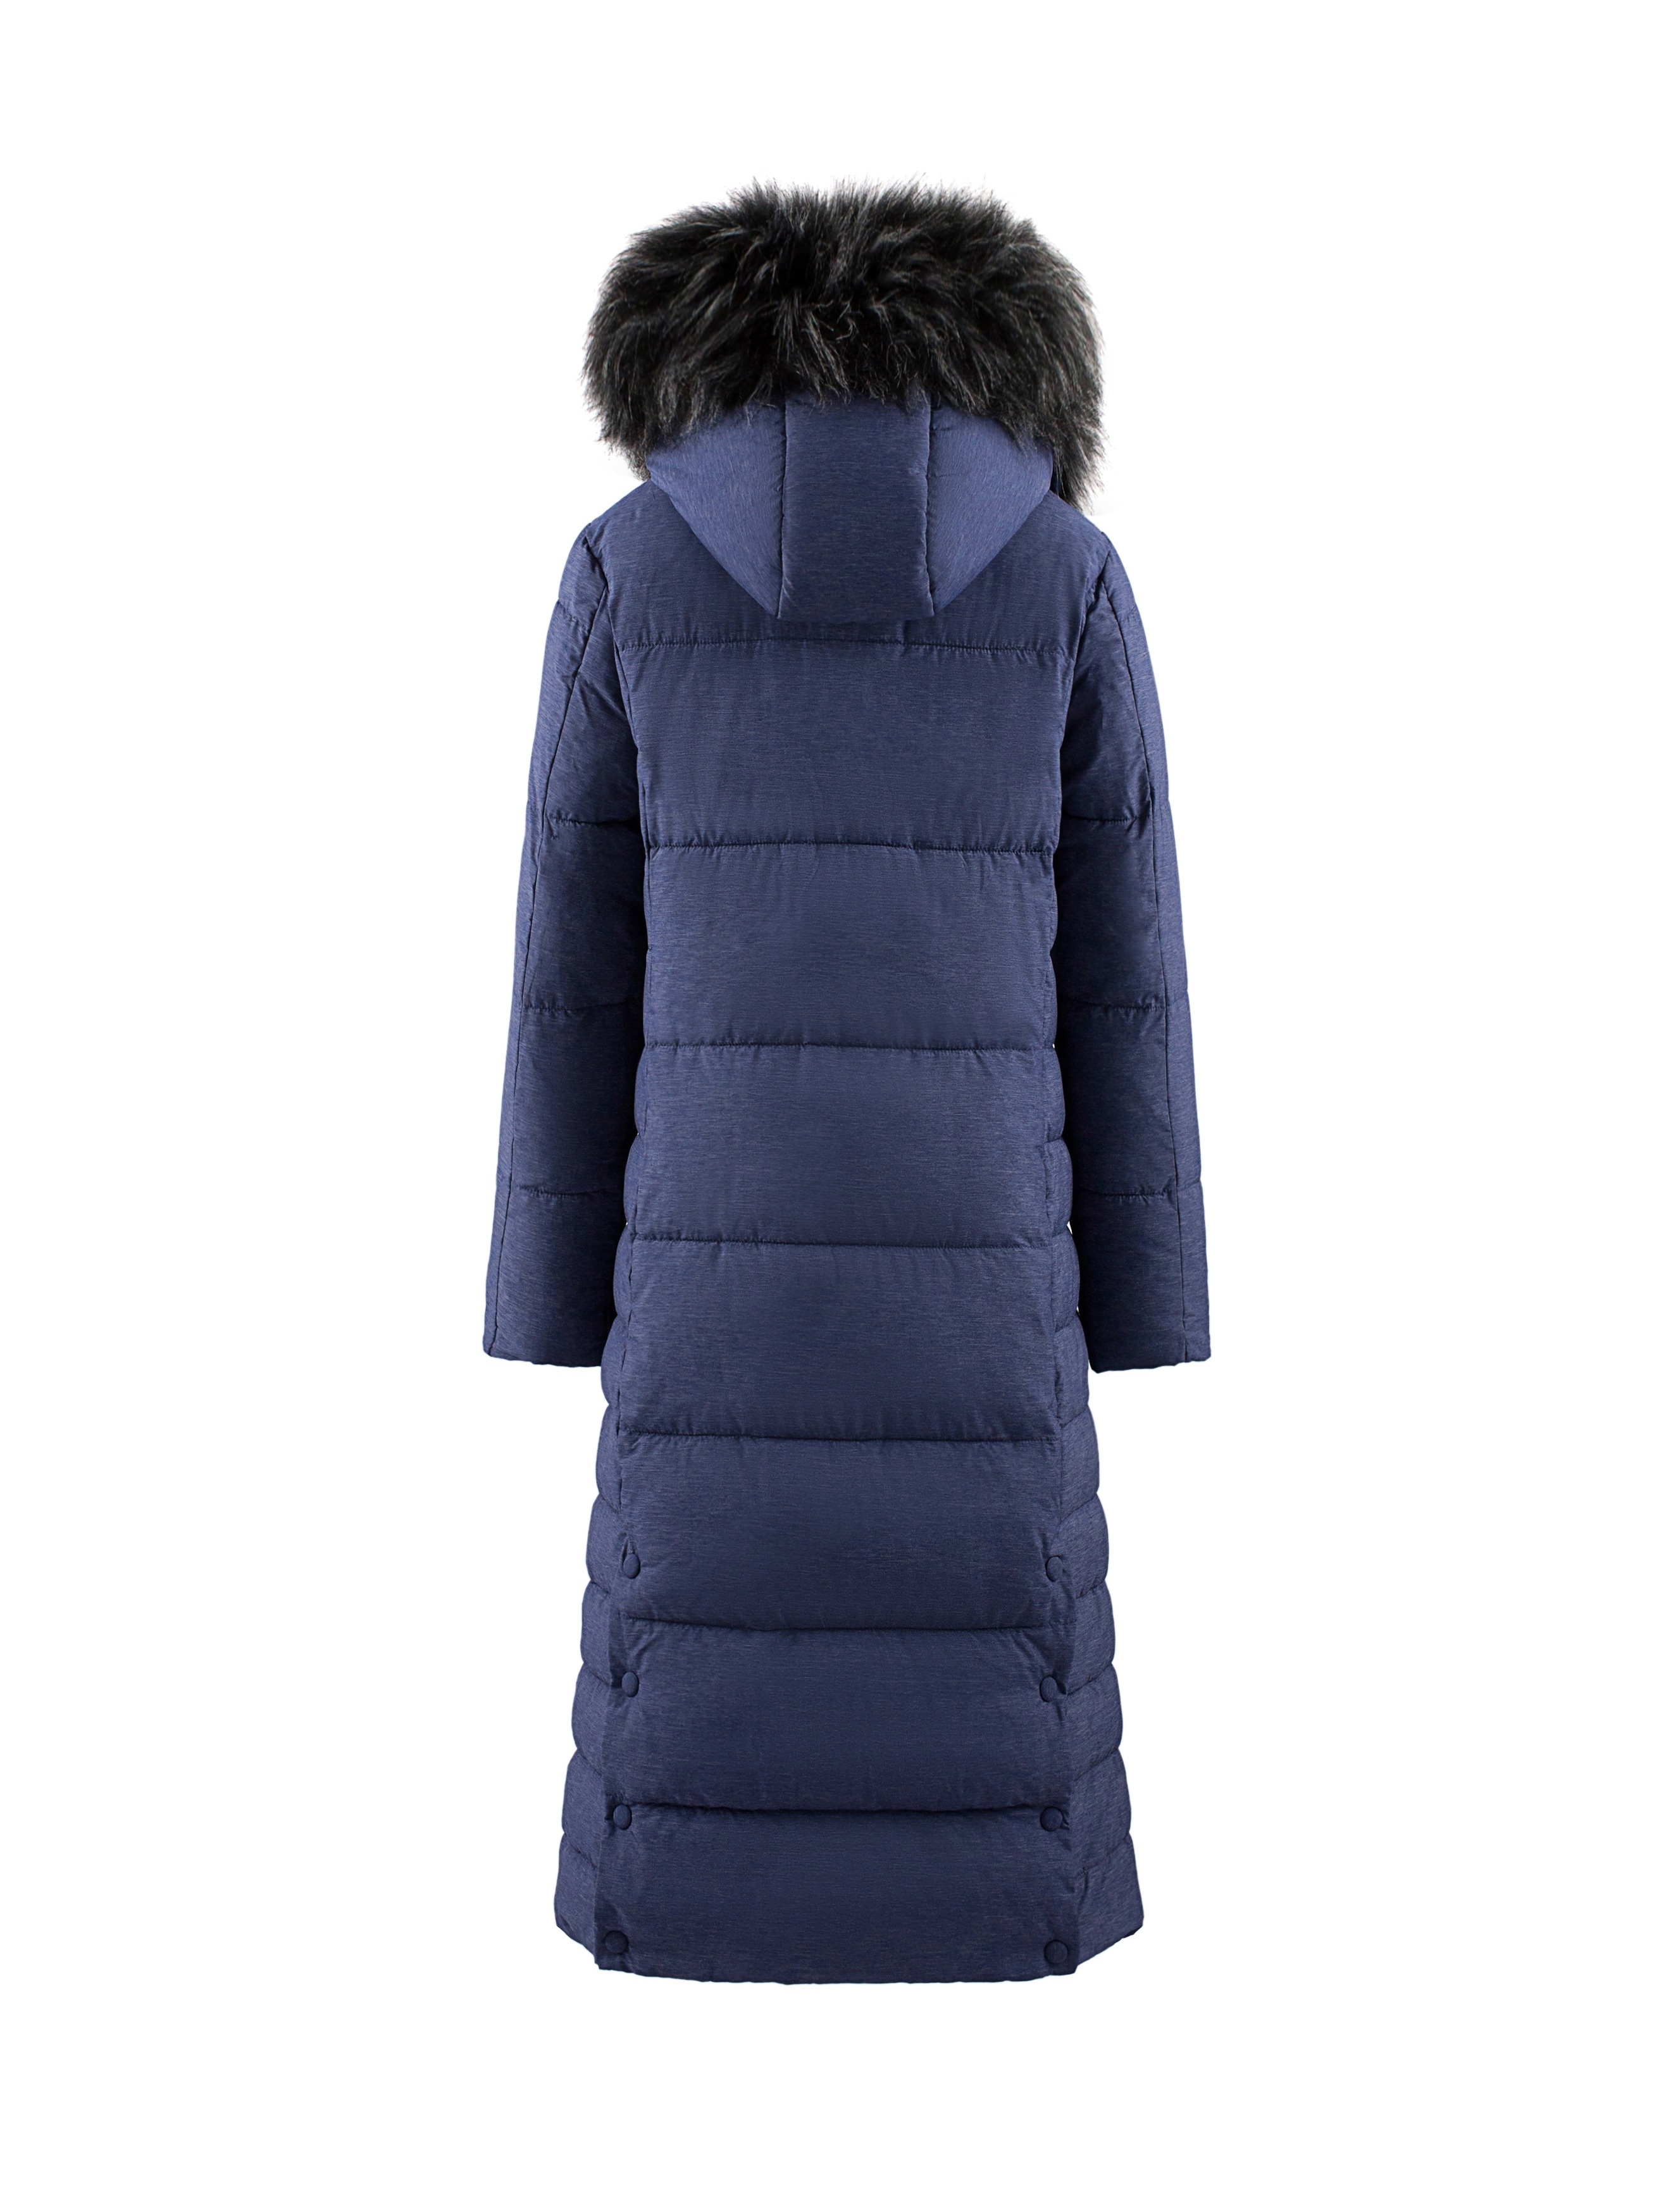 Fleece Lined Winter Coats for Women Thicken Warm Hooded Jacket Slim Outwear  Elegant Fur Coat Solid Hoodie Jackets